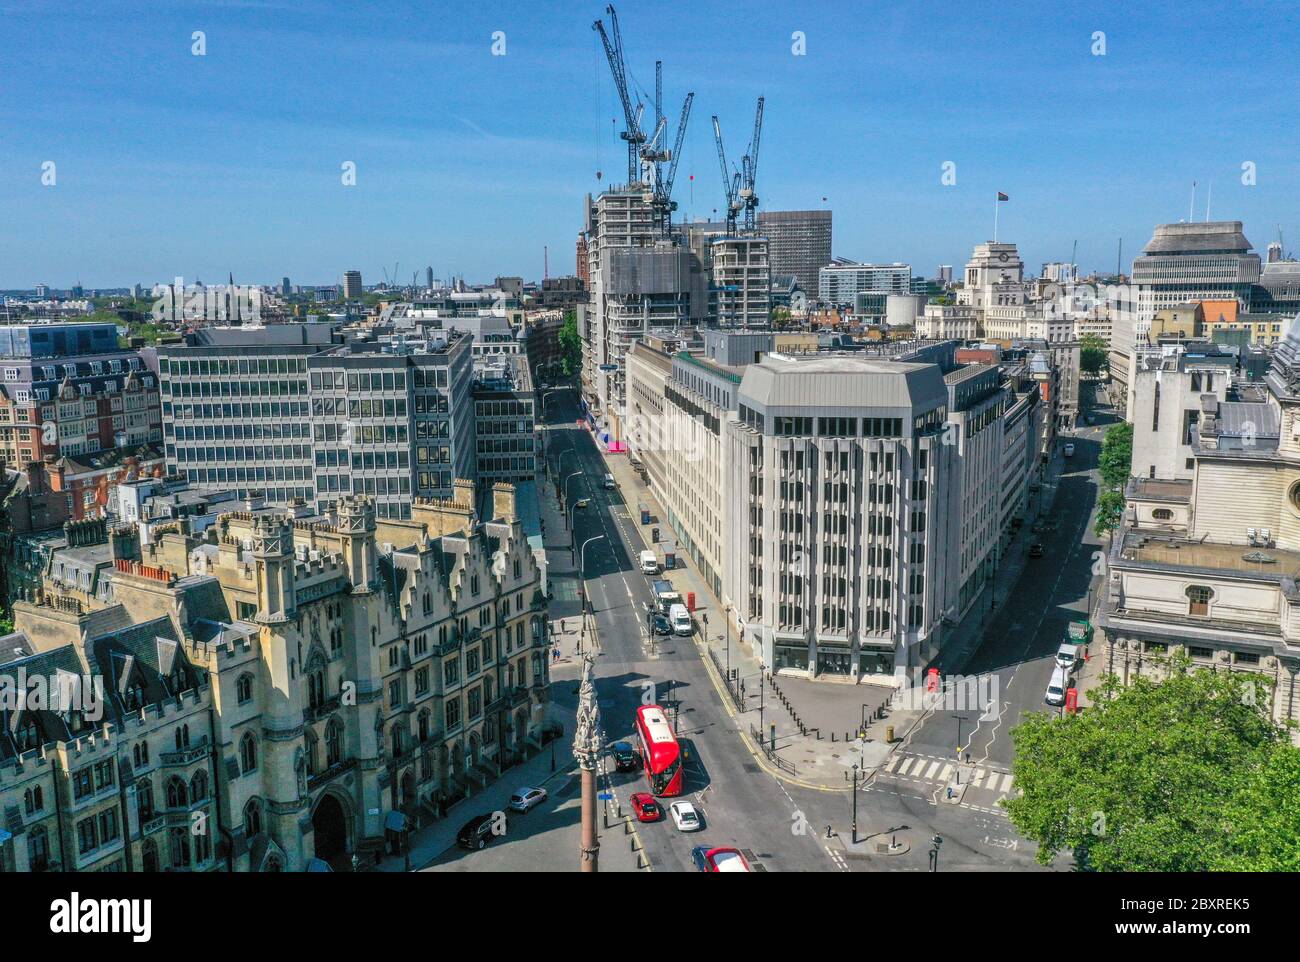 Una vista aerea di Londra, all'incrocio tra Victoria Street e Tothill Street, che mostra il Crimea e il memoriale indiano Mutiny, il dipartimento per l'istruzione (in alto a sinistra), la Barclays Bank (centro) e la Methodist Central Hall sulla Story's Gate (a destra). Foto Stock